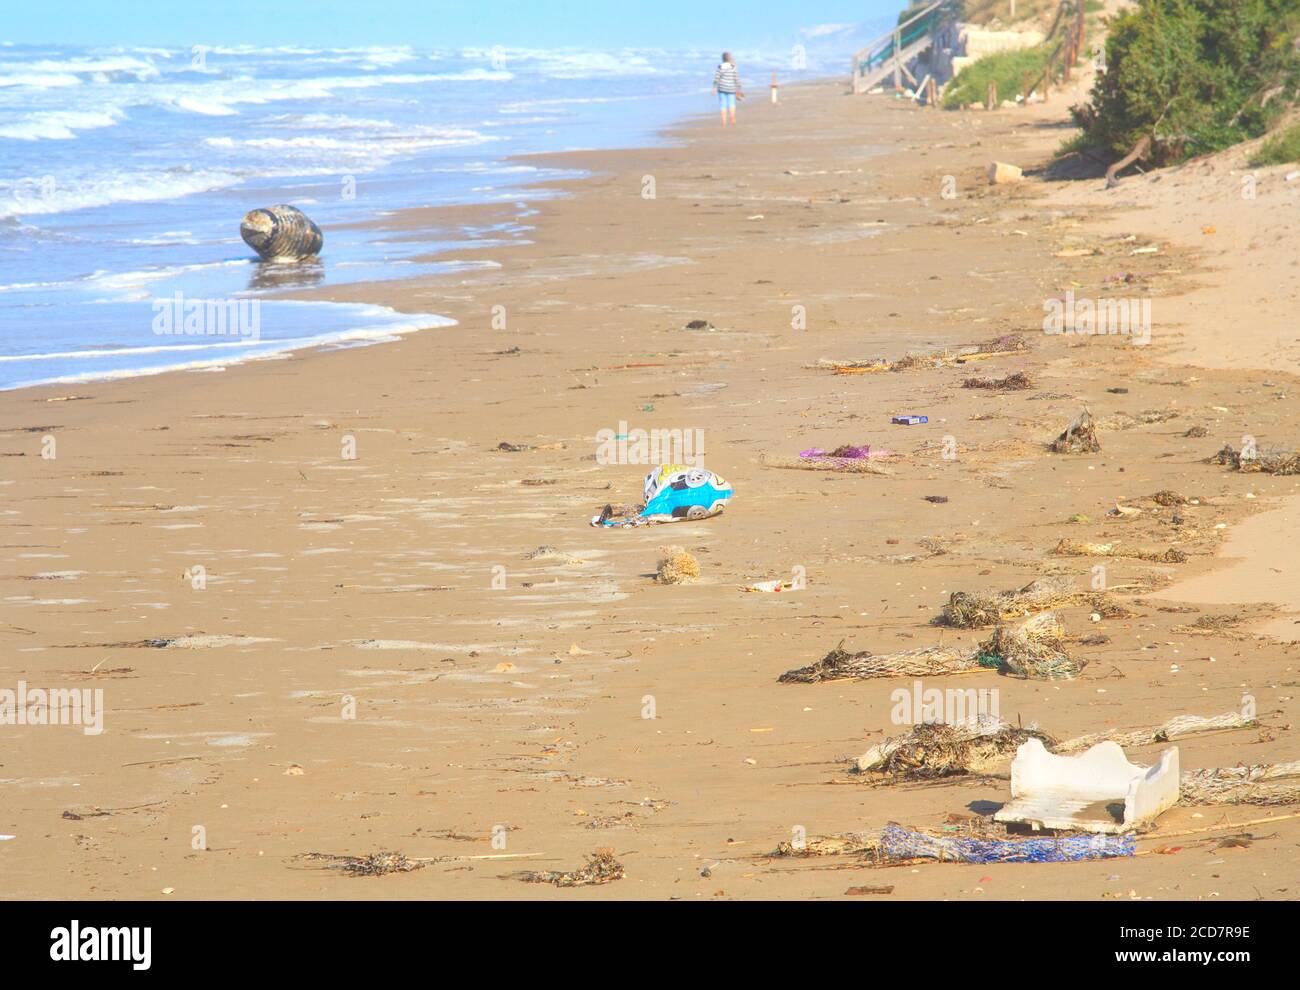 Vertreibter Plastikmüll am Strand, verschmutzung des mittelmeeres durch Kunststoffe und Kunststoffe, Umweltschutzkonzept Stockfoto